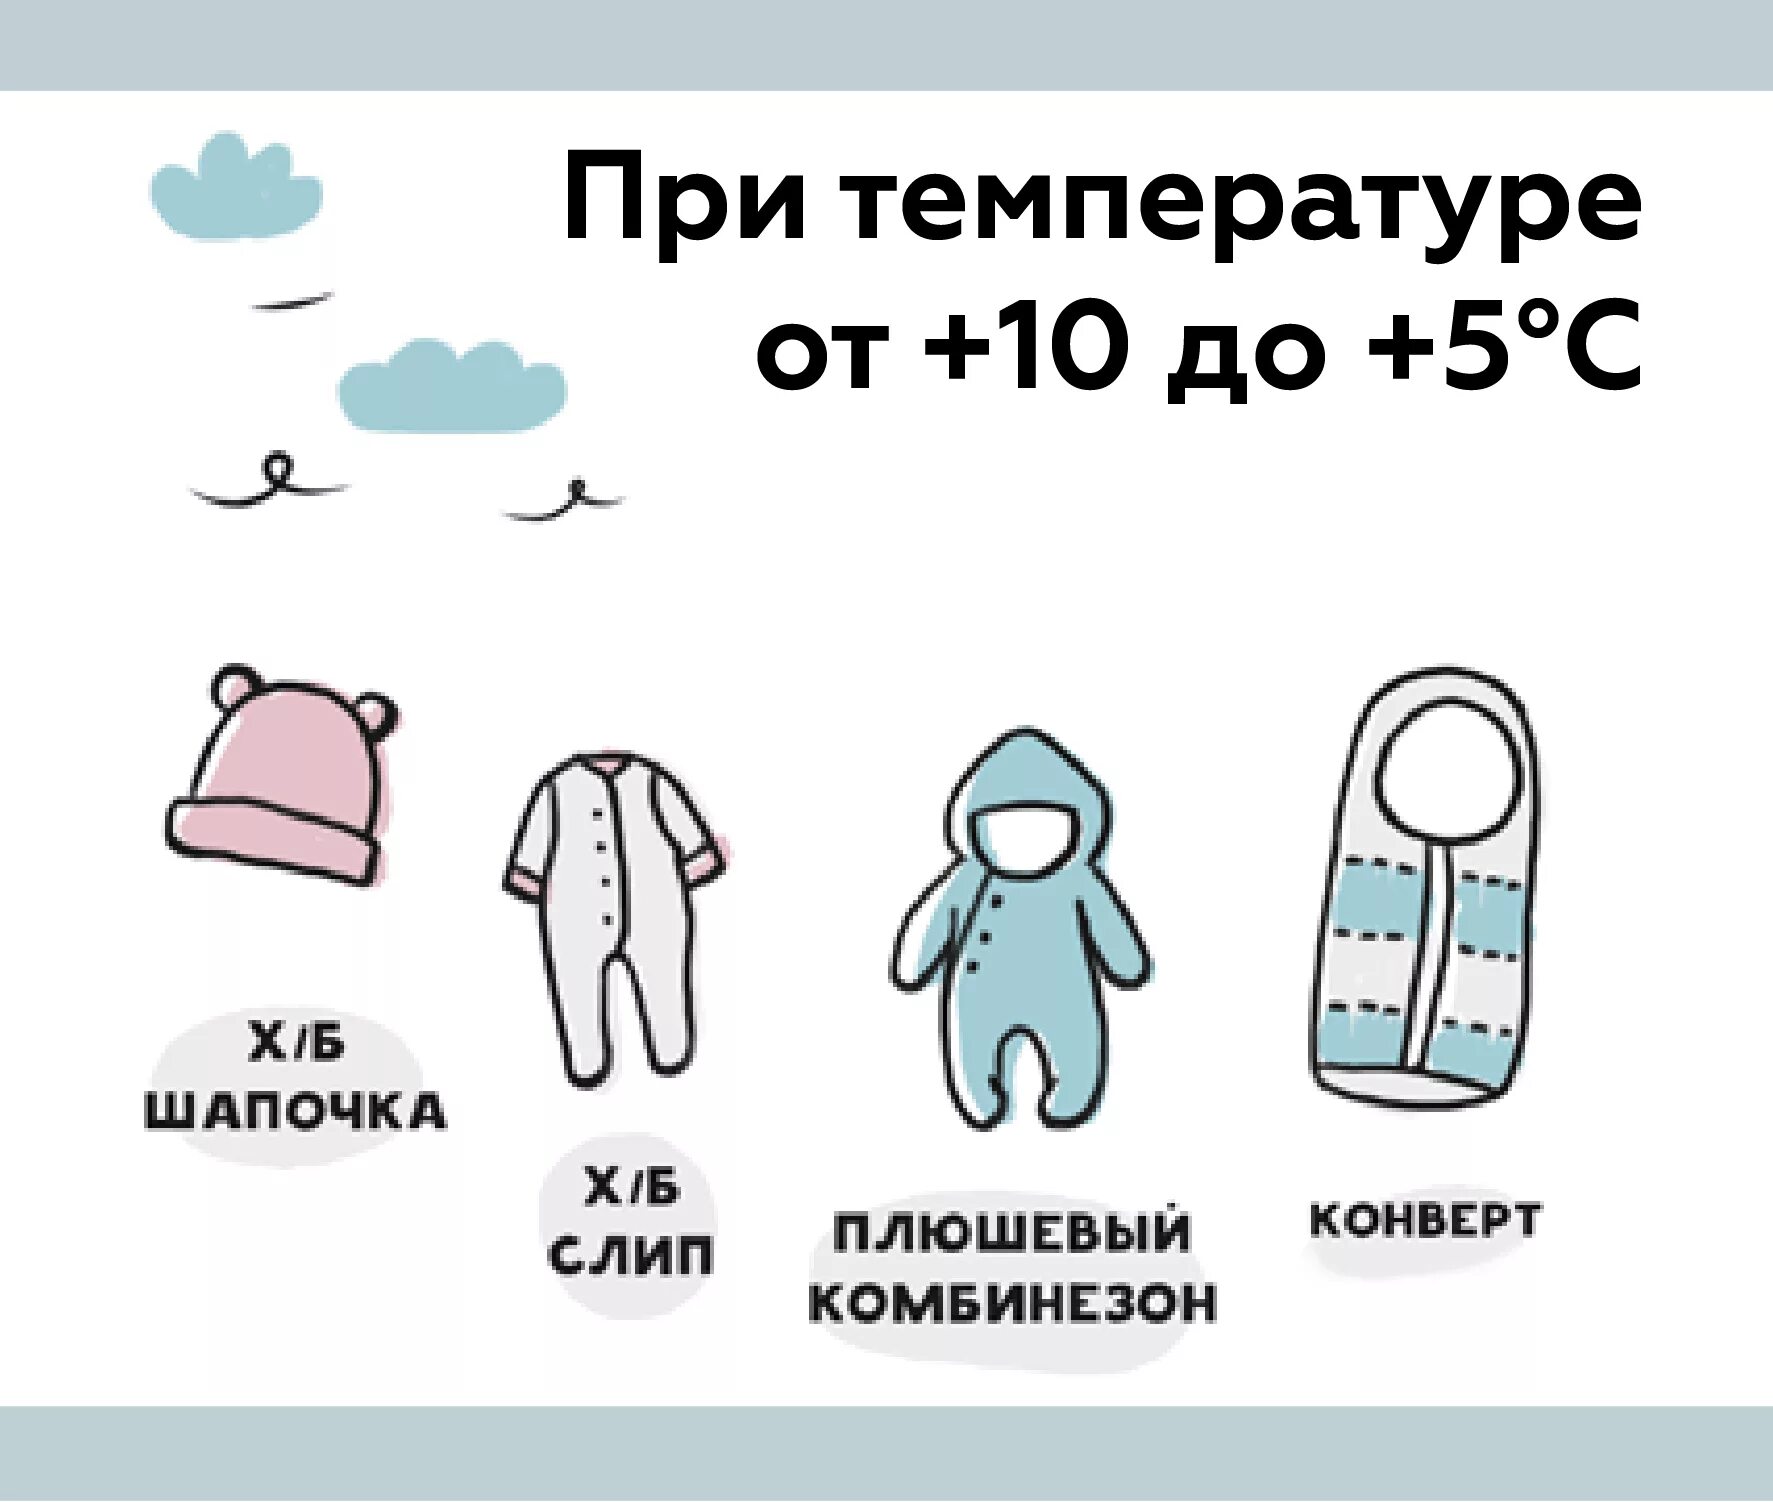 Как одевать малыша в 5. Как одеть грудничка на прогулку в +10. Как одевать грудничка на улицу в +10. Как одевать малыша в 10 градусов тепла. Как одевать грудничка в +25 на прогулку.